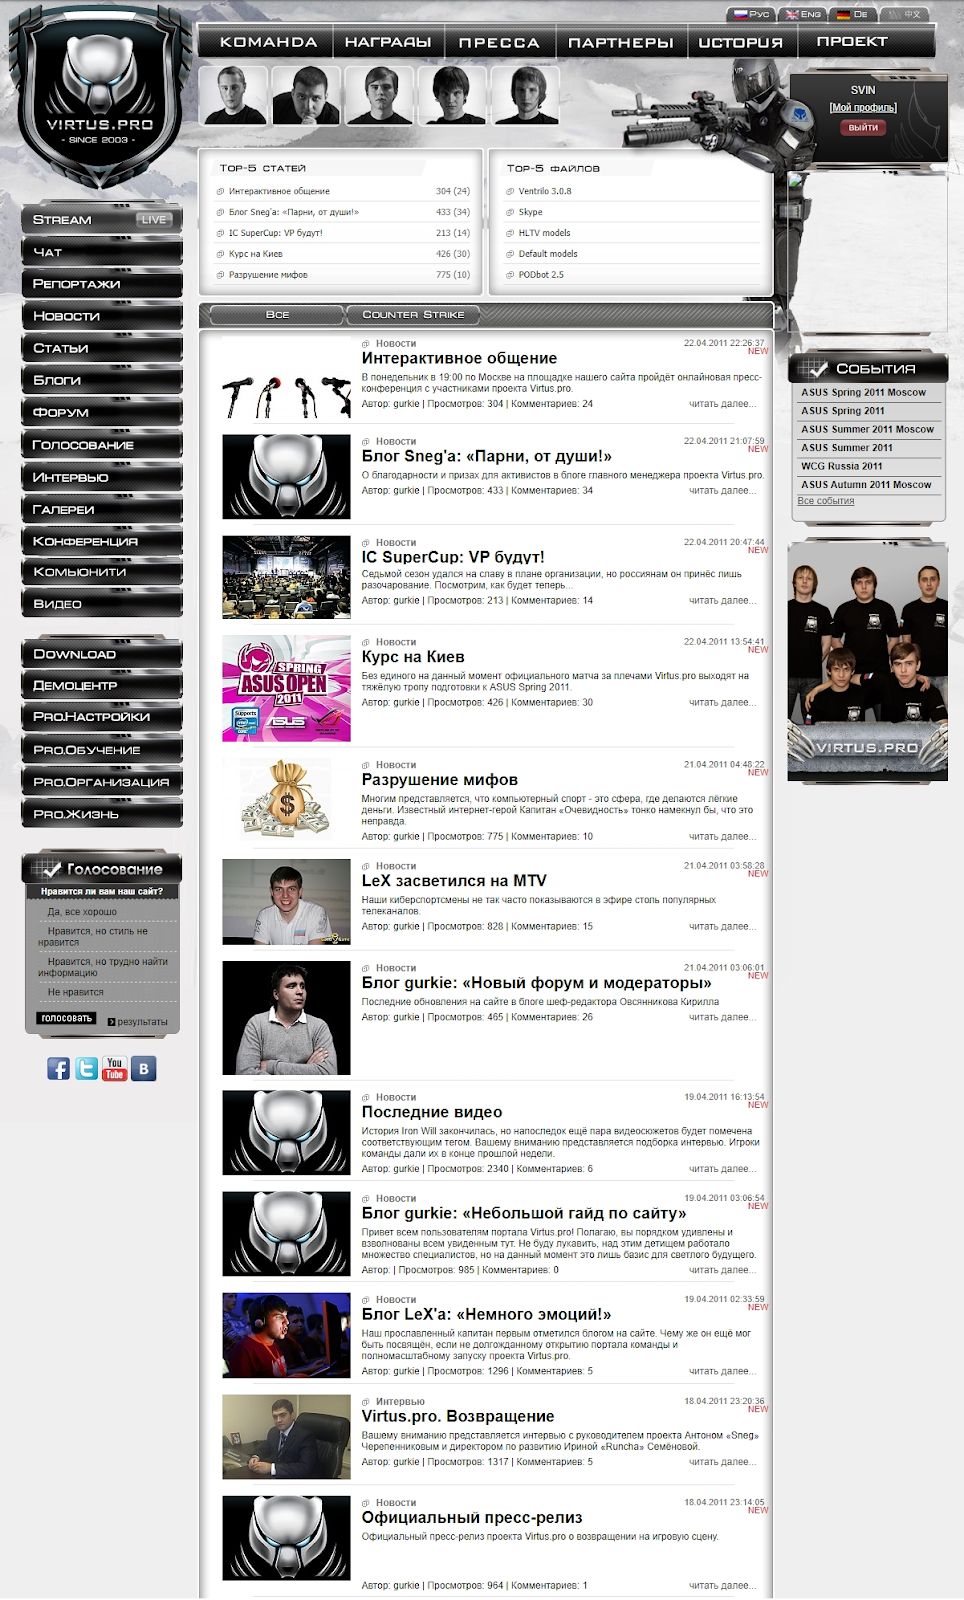 Сайт virtuspro.org в апреле 2011 года